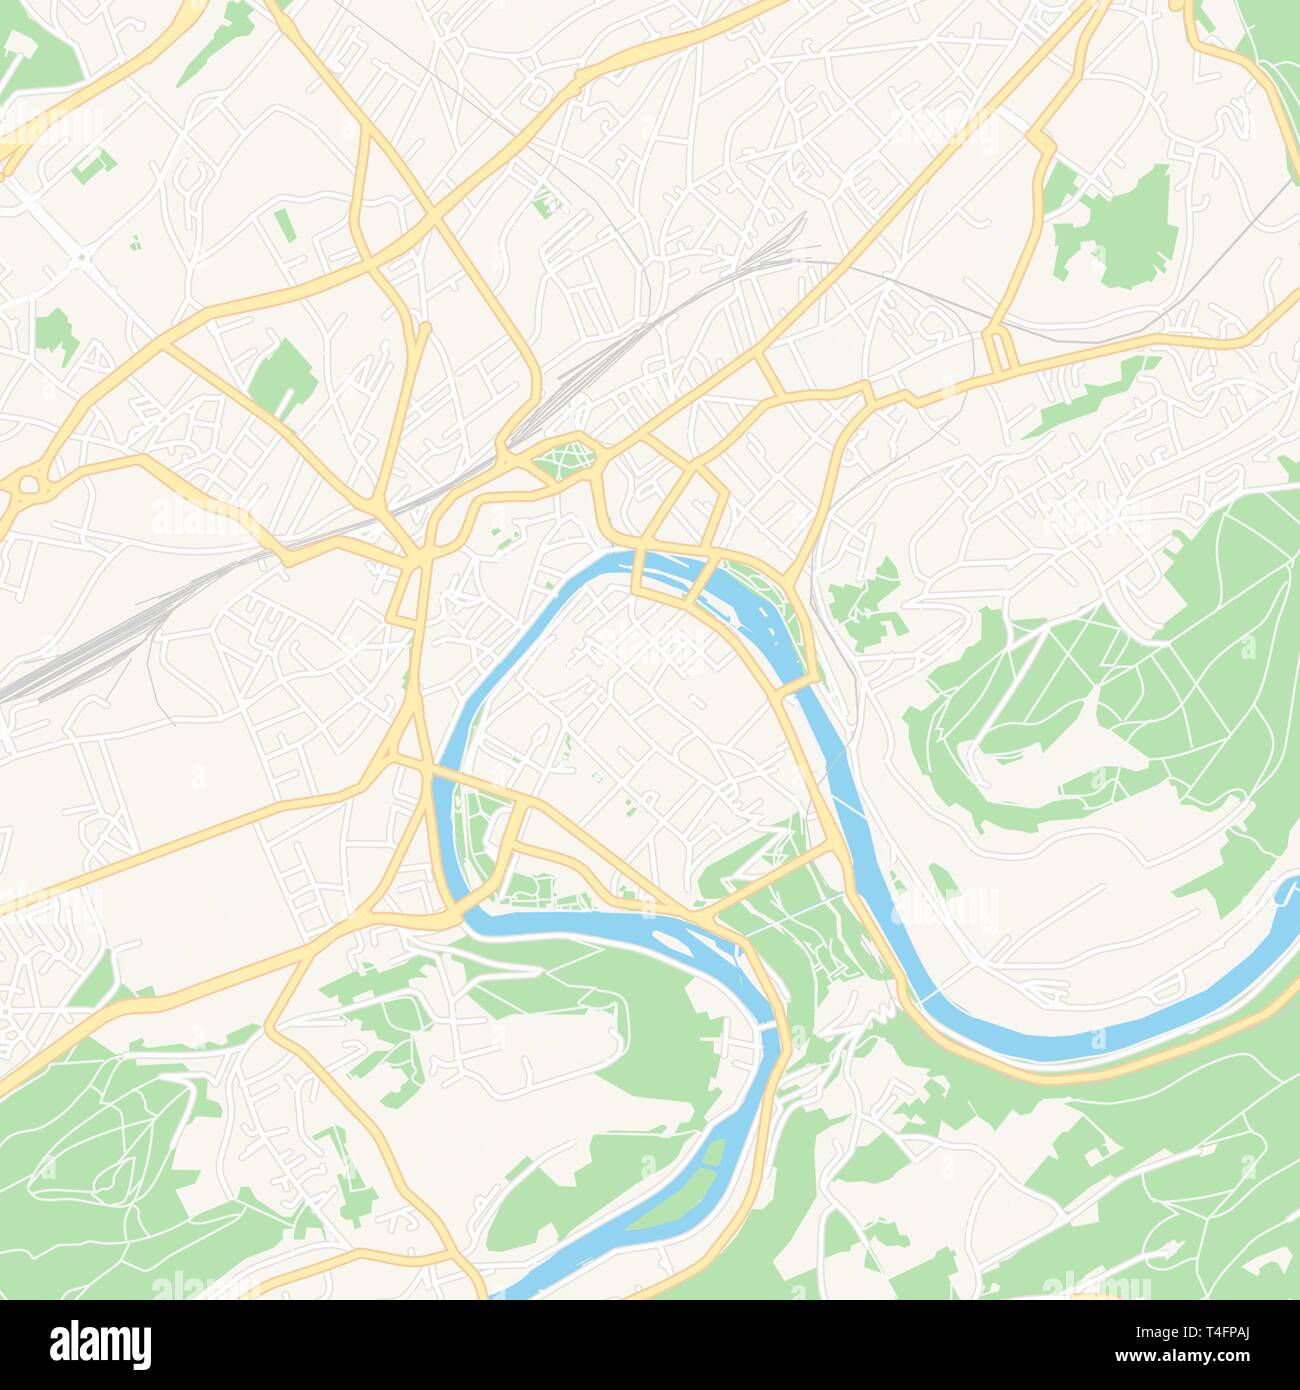 Druckbare Karte von Besancon, Frankreich mit Haupt- und Nebenstraßen und größere Bahnen. Diese Karte ist sorgfältig für das Routing und die Platzierung von individuell gestalteten Stock Vektor